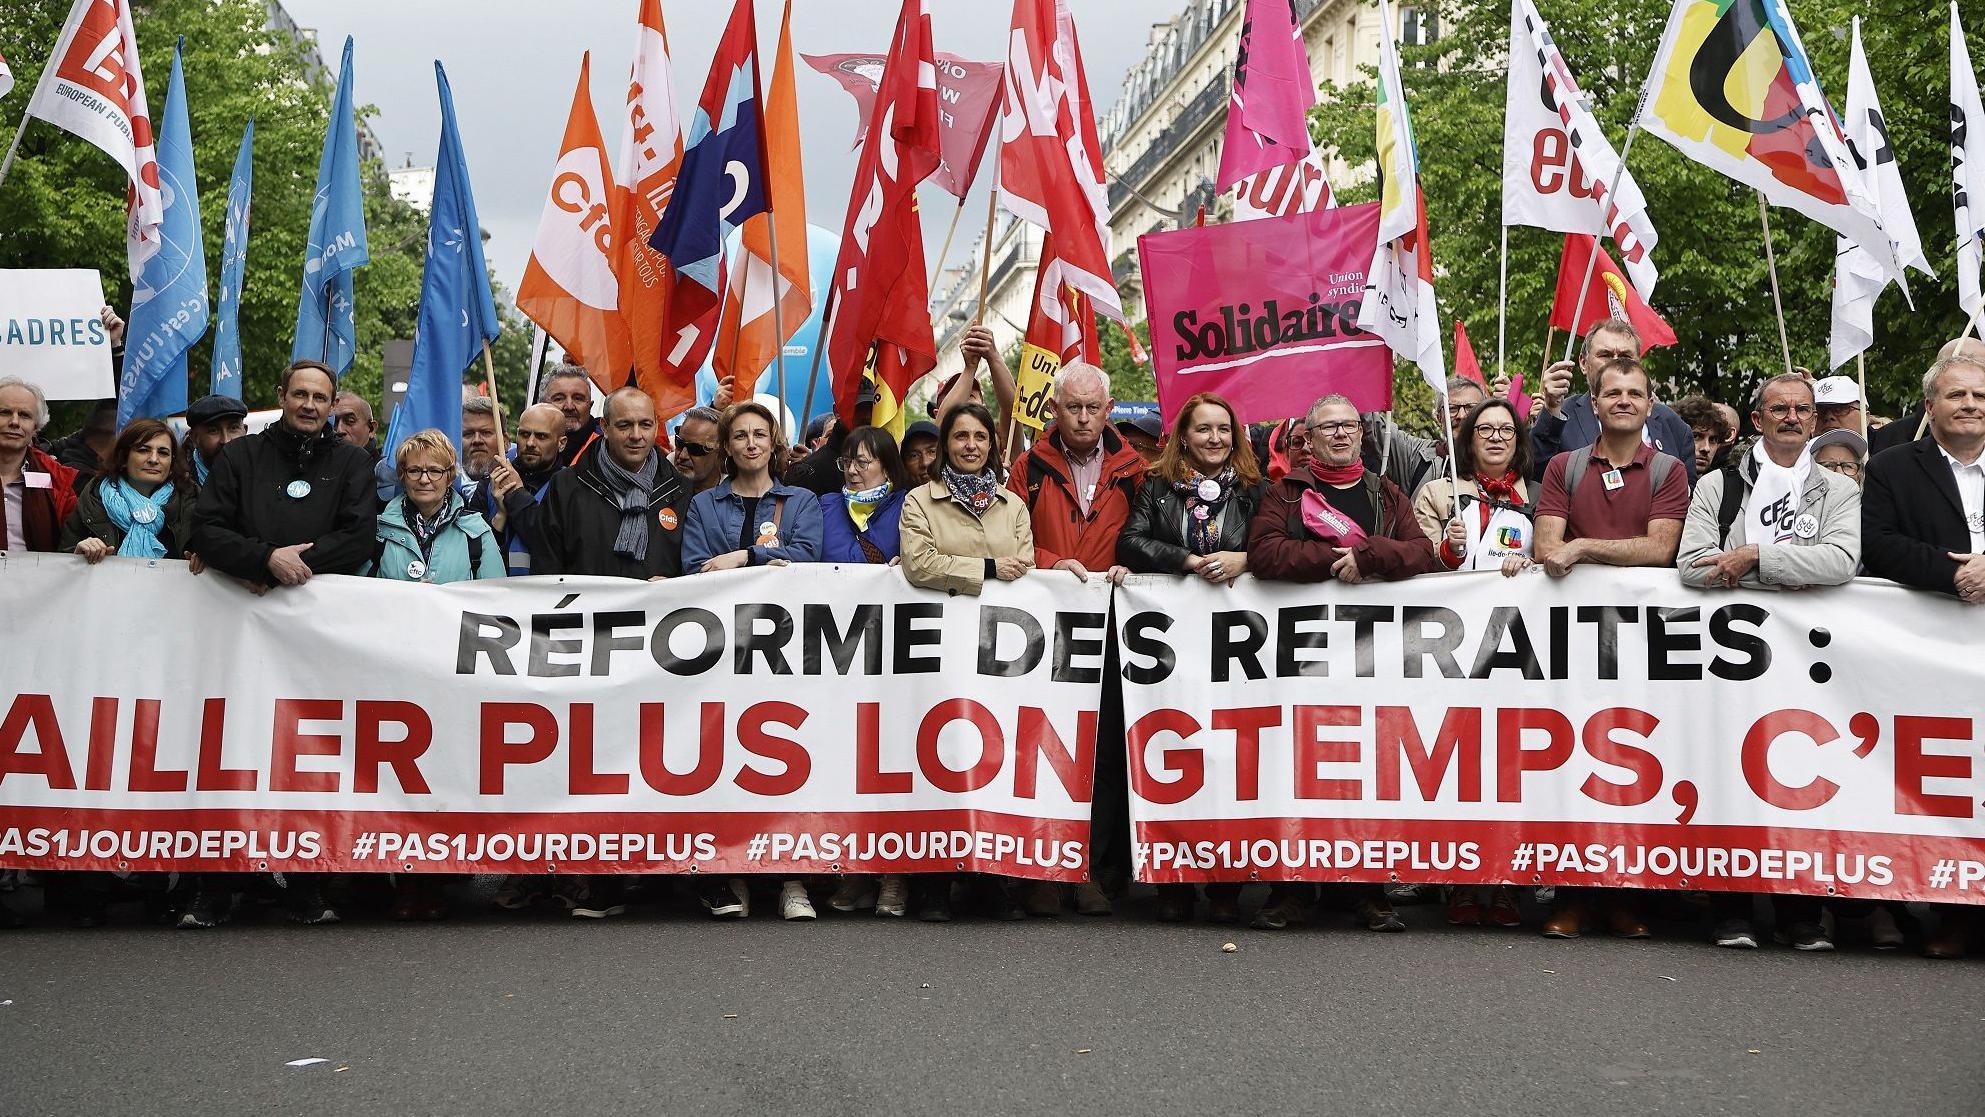 احتجاجات في فرنسا على قوانين التقاعد 